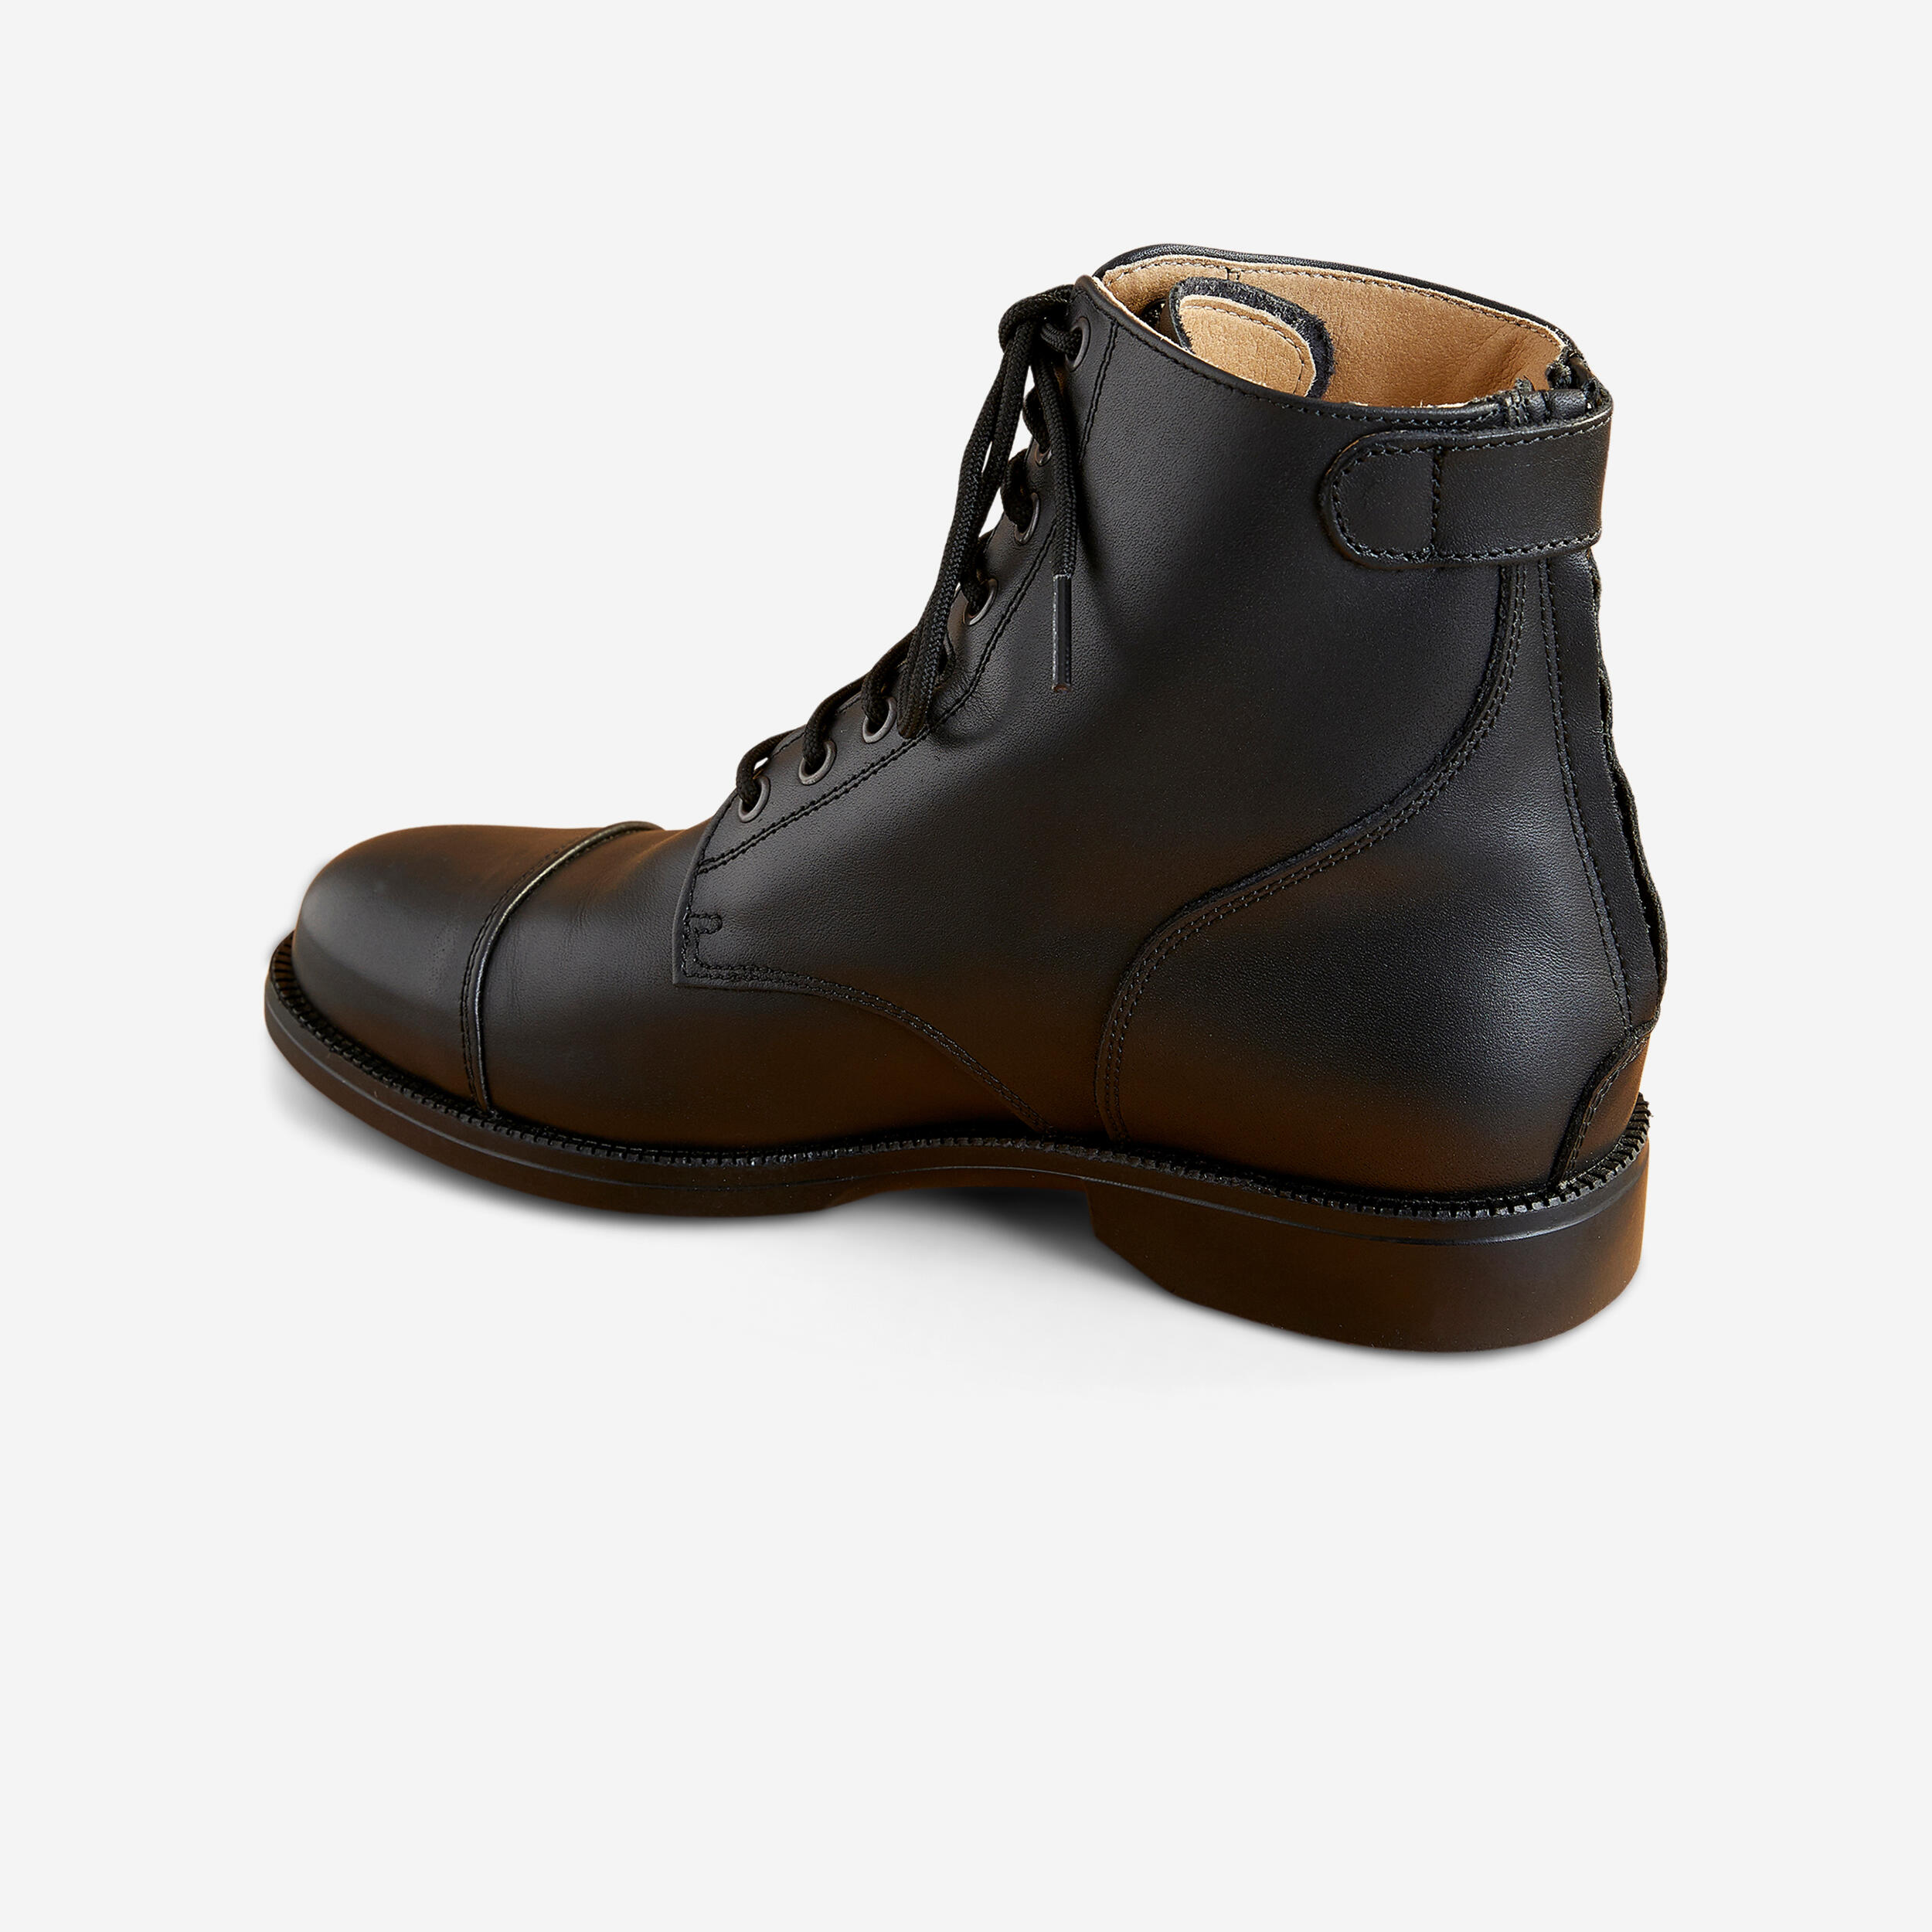 Boots d'équitation en cuir à lacets - Paddock 560 noir - FOUGANZA